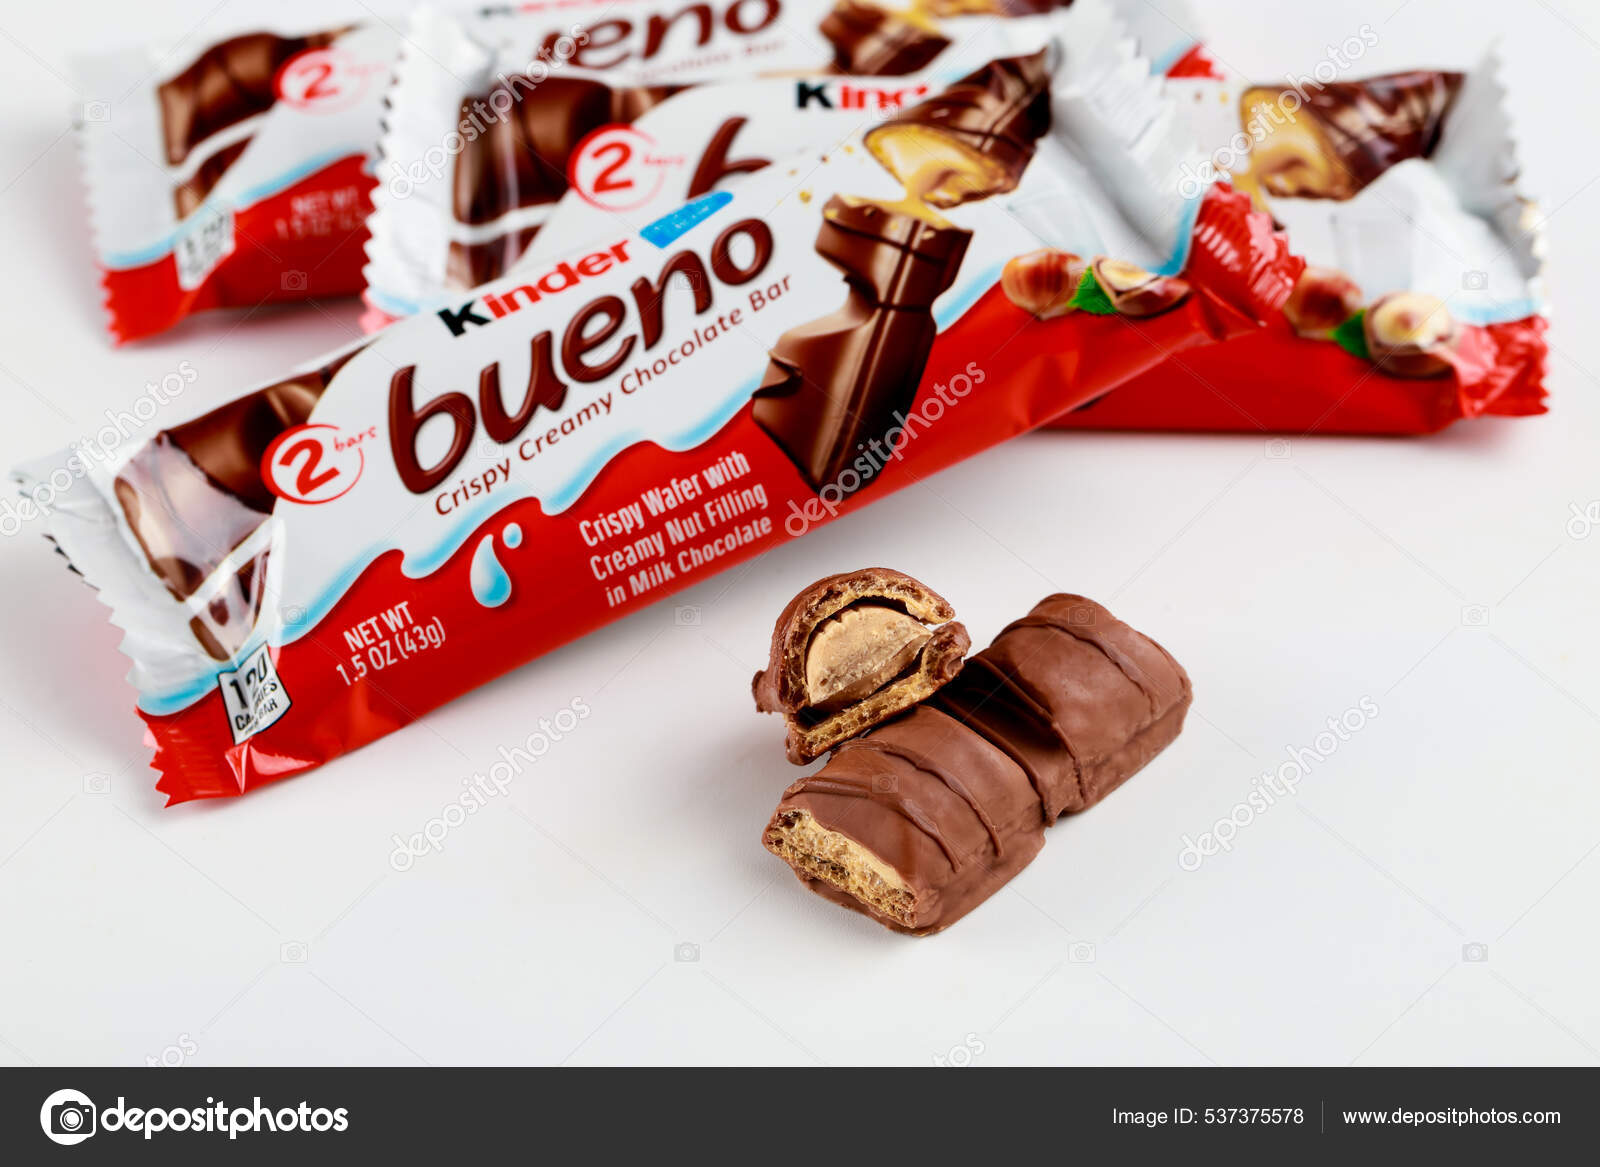 Kinder Bueno Crispy Creamy Chocolate Bars